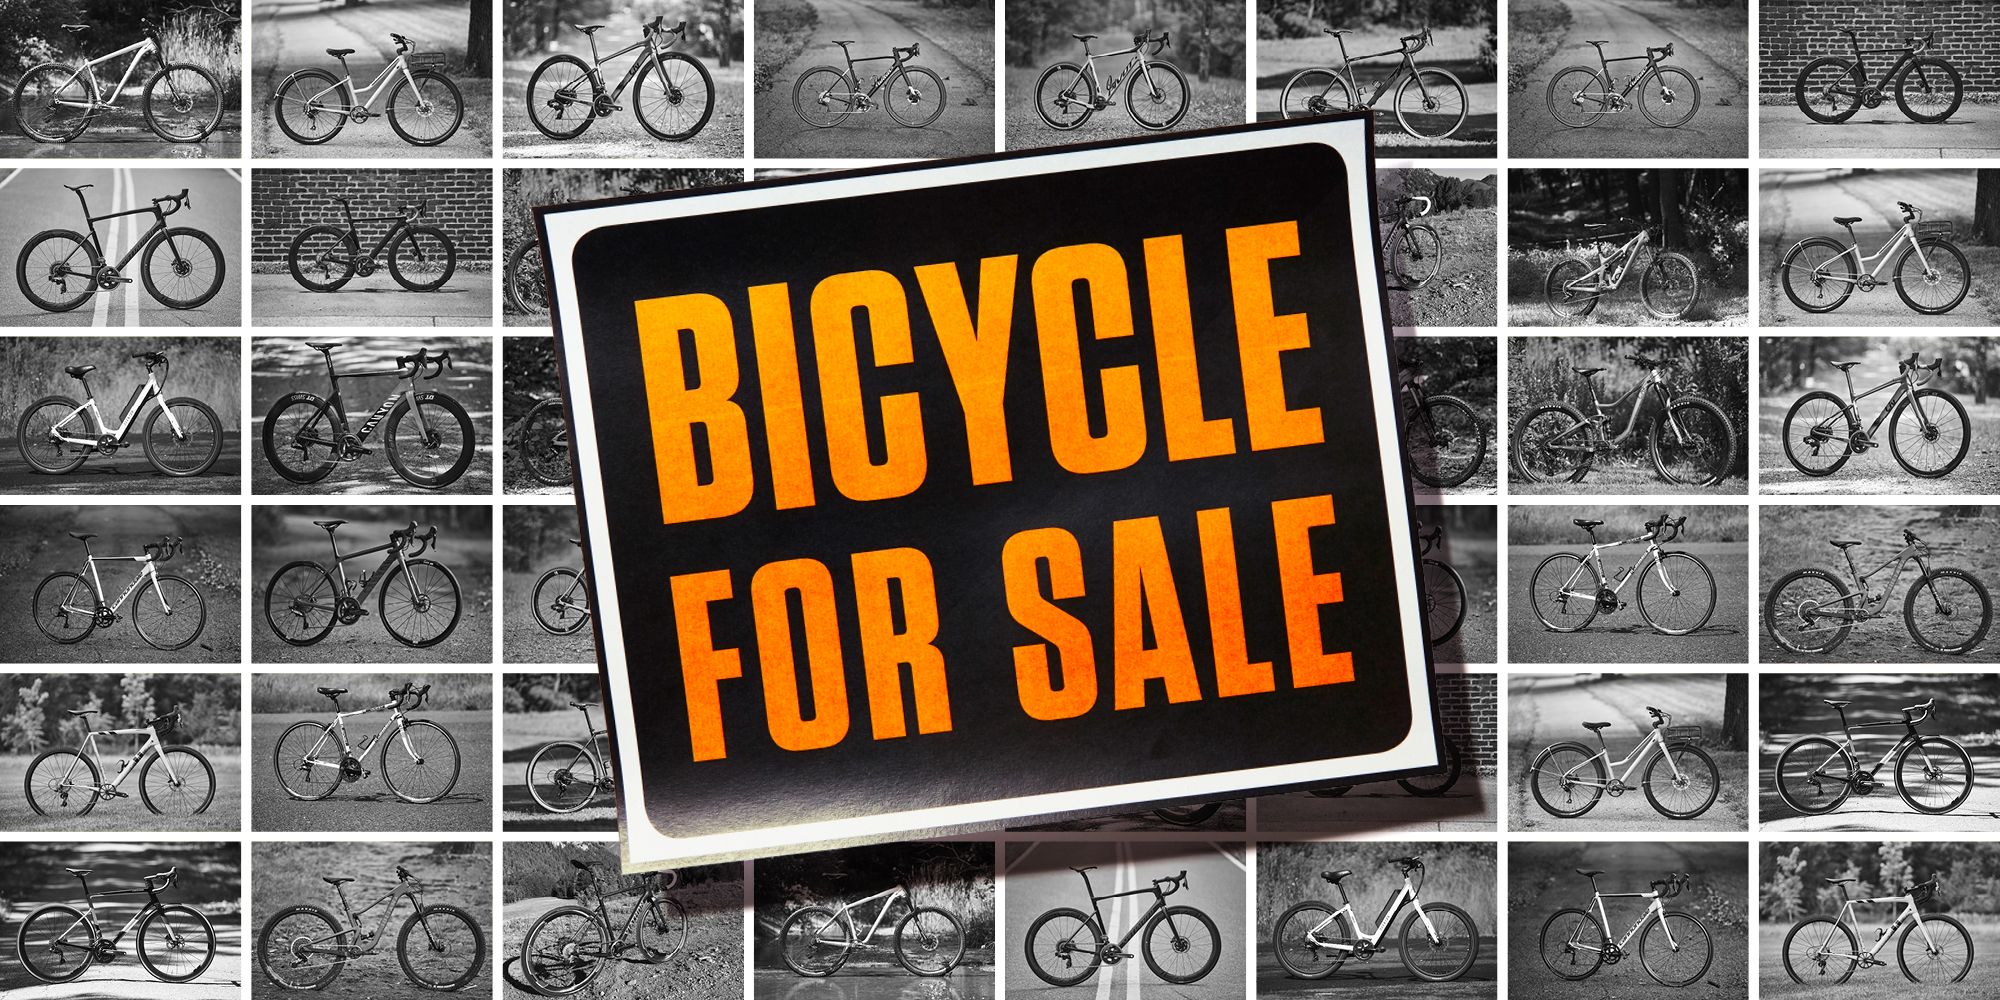 Save Sales Event - Sự kiện mua xe đạp và phụ tùng giảm giá